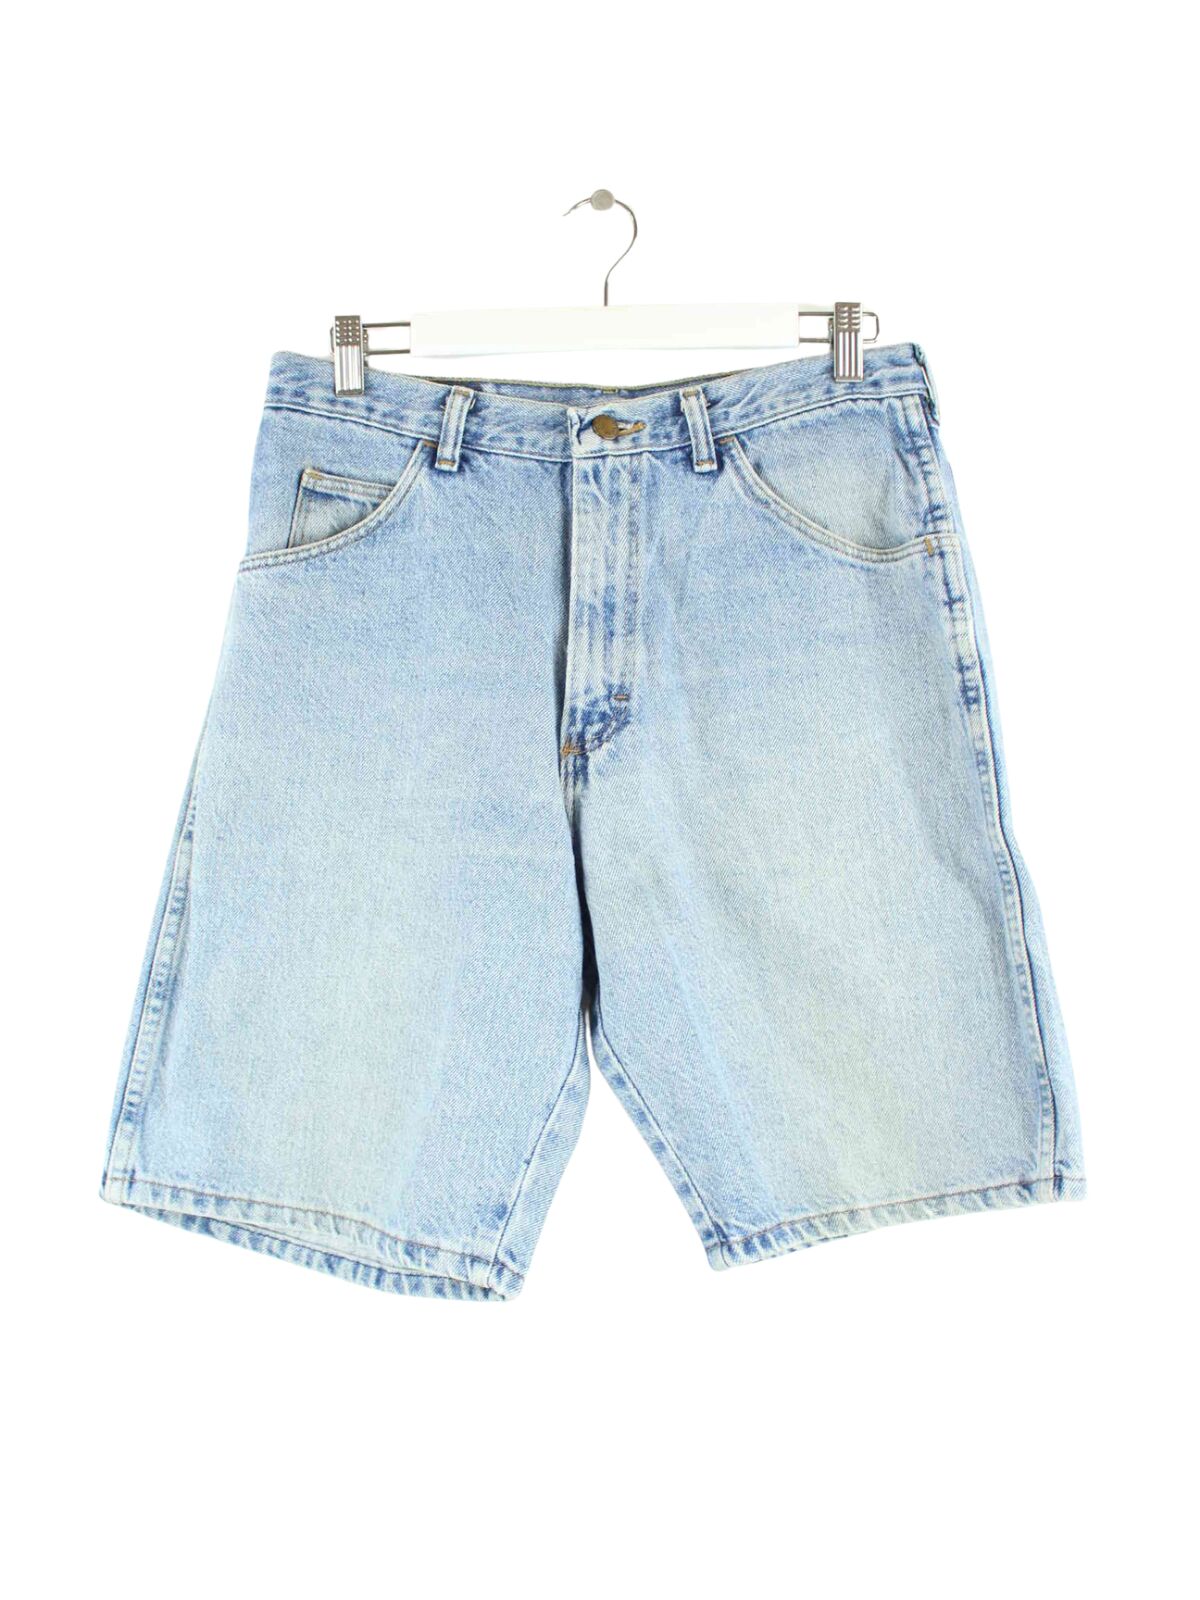 Wrangler Jorts / Jeans Shorts Blau  (front image)